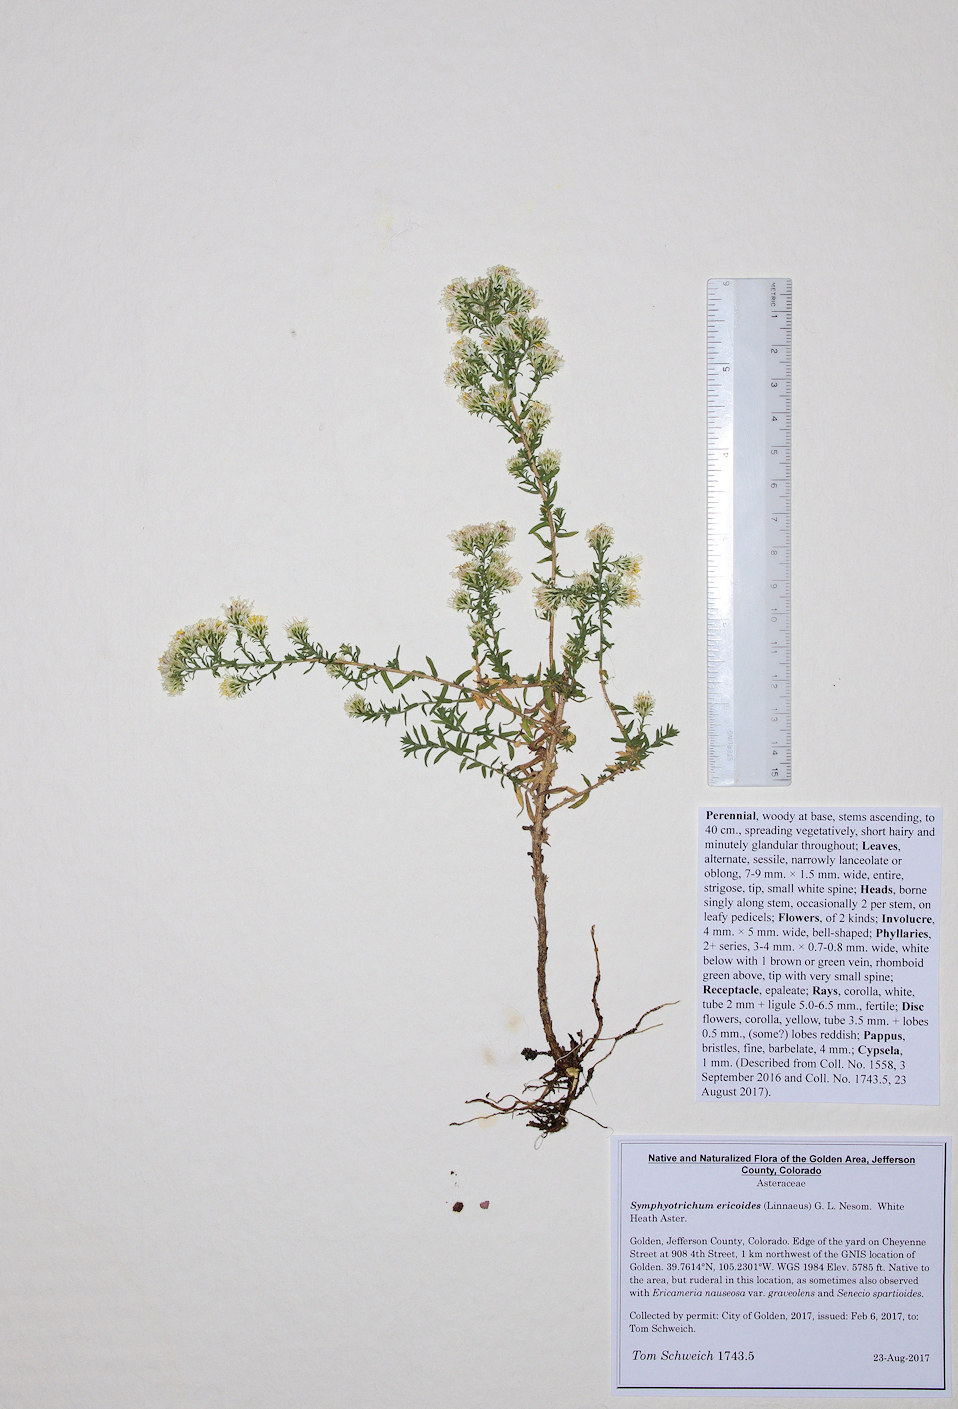 Asteraceae Symphyotrichum ericoides